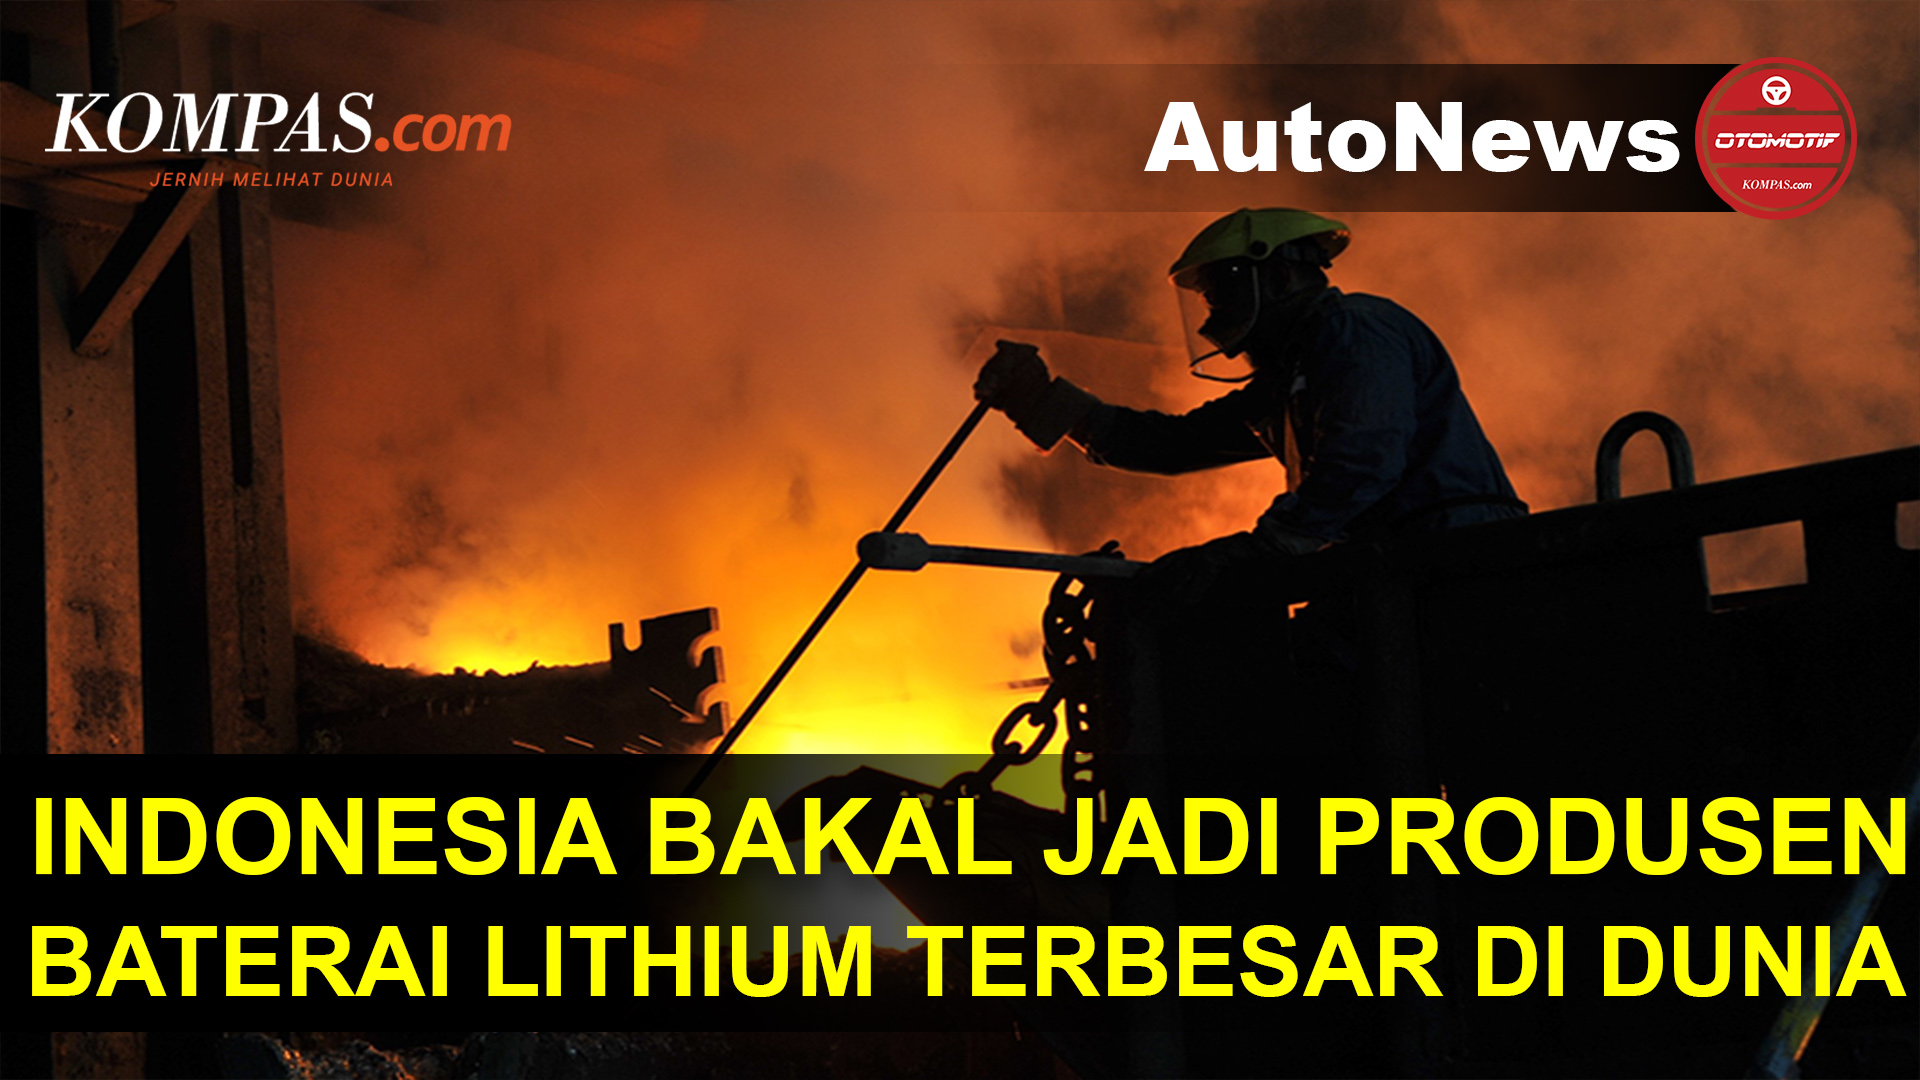 Luhut Sebut Indonesia Bakal Jadi Salah Satu Produsen Baterai Lithium Terbesar di Dunia